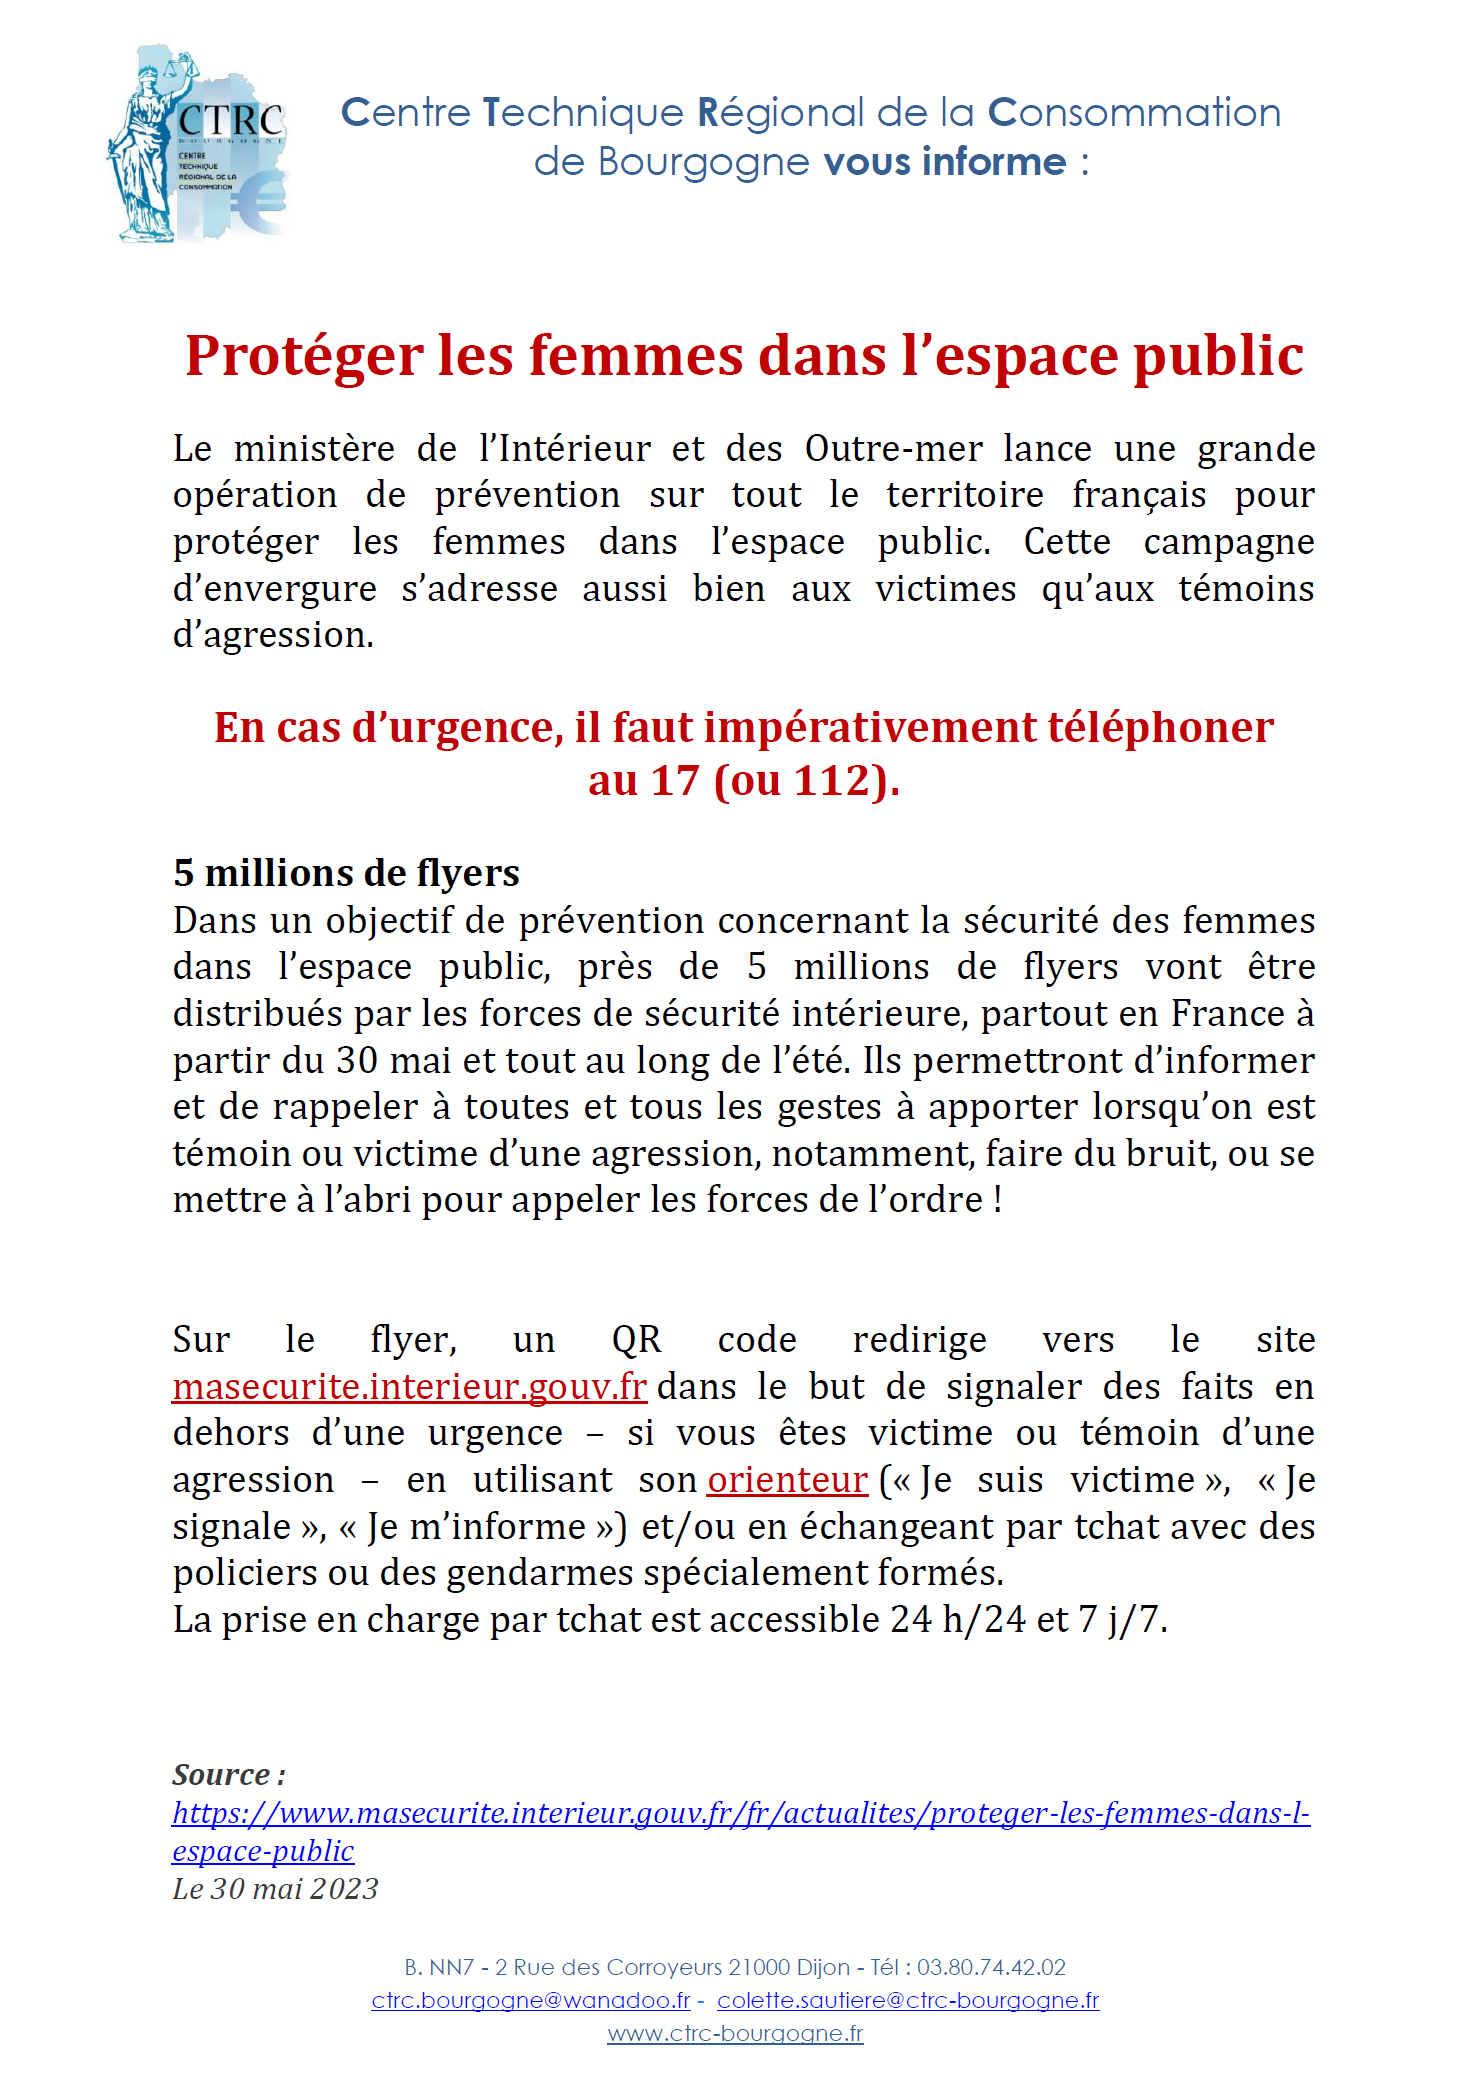 Sécurité des femmes P1 - CTRC de Bourgogne - 06.06.2023